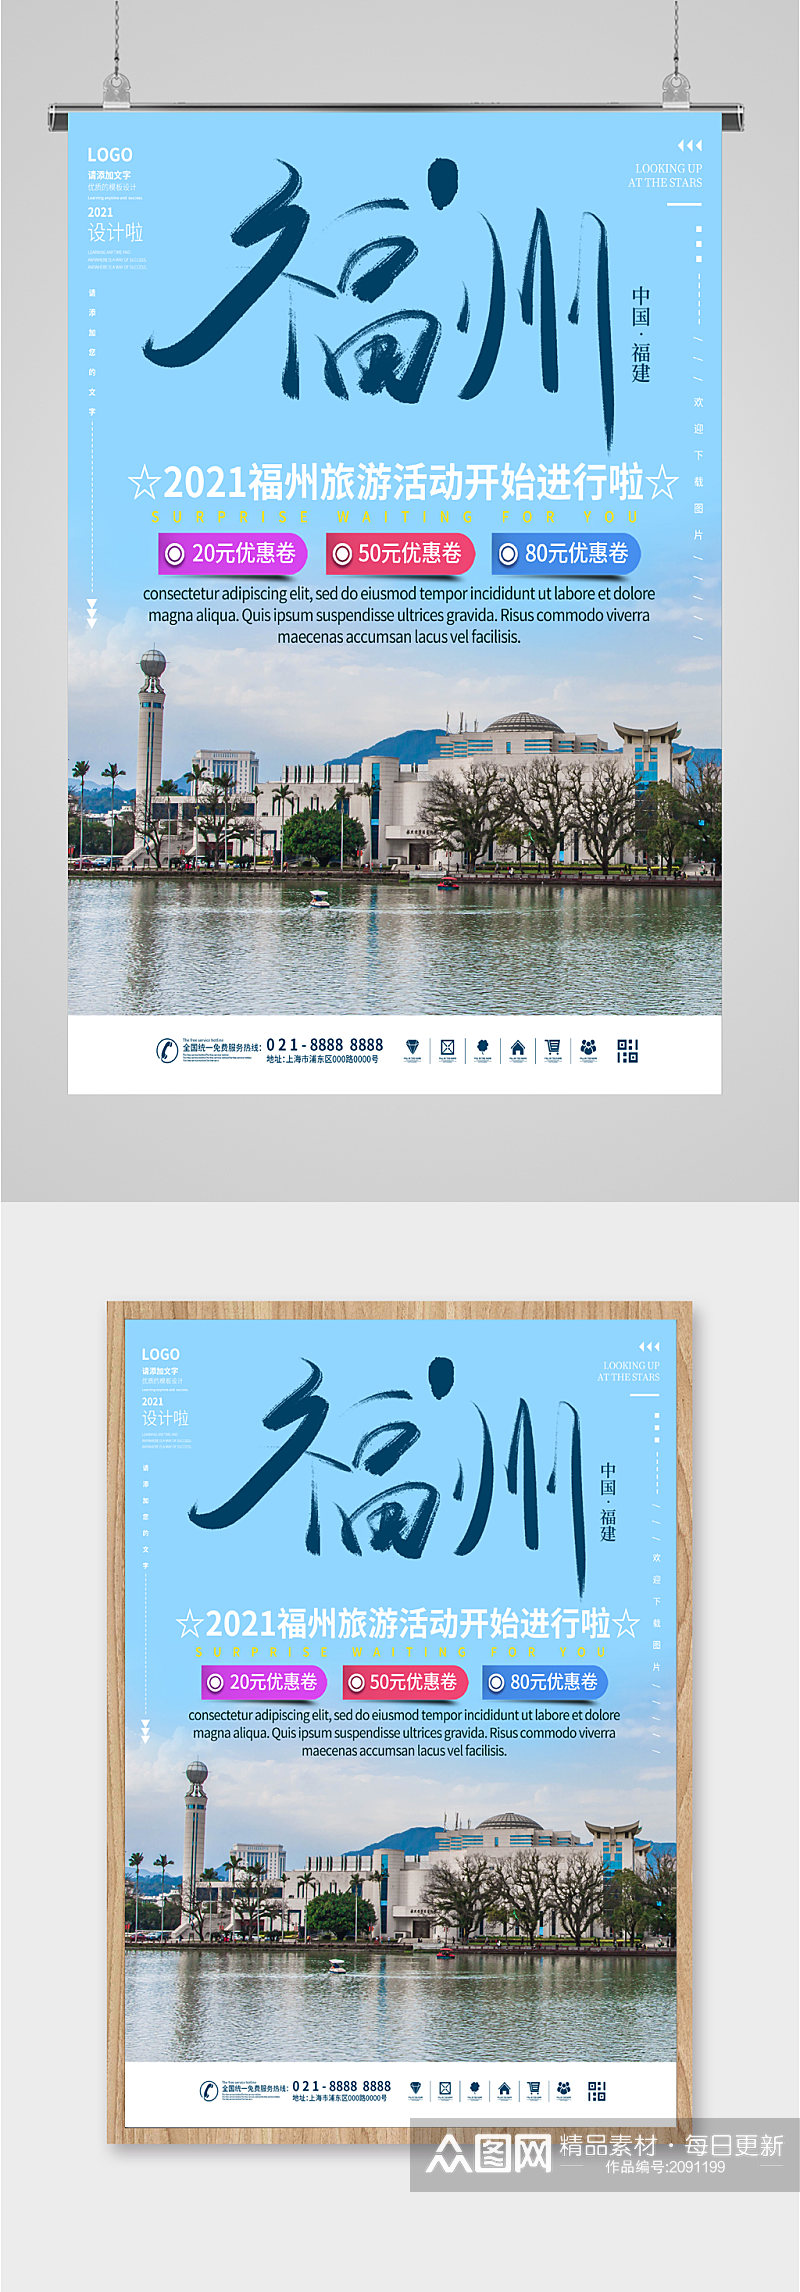 福州旅行活动旅游报名海报素材